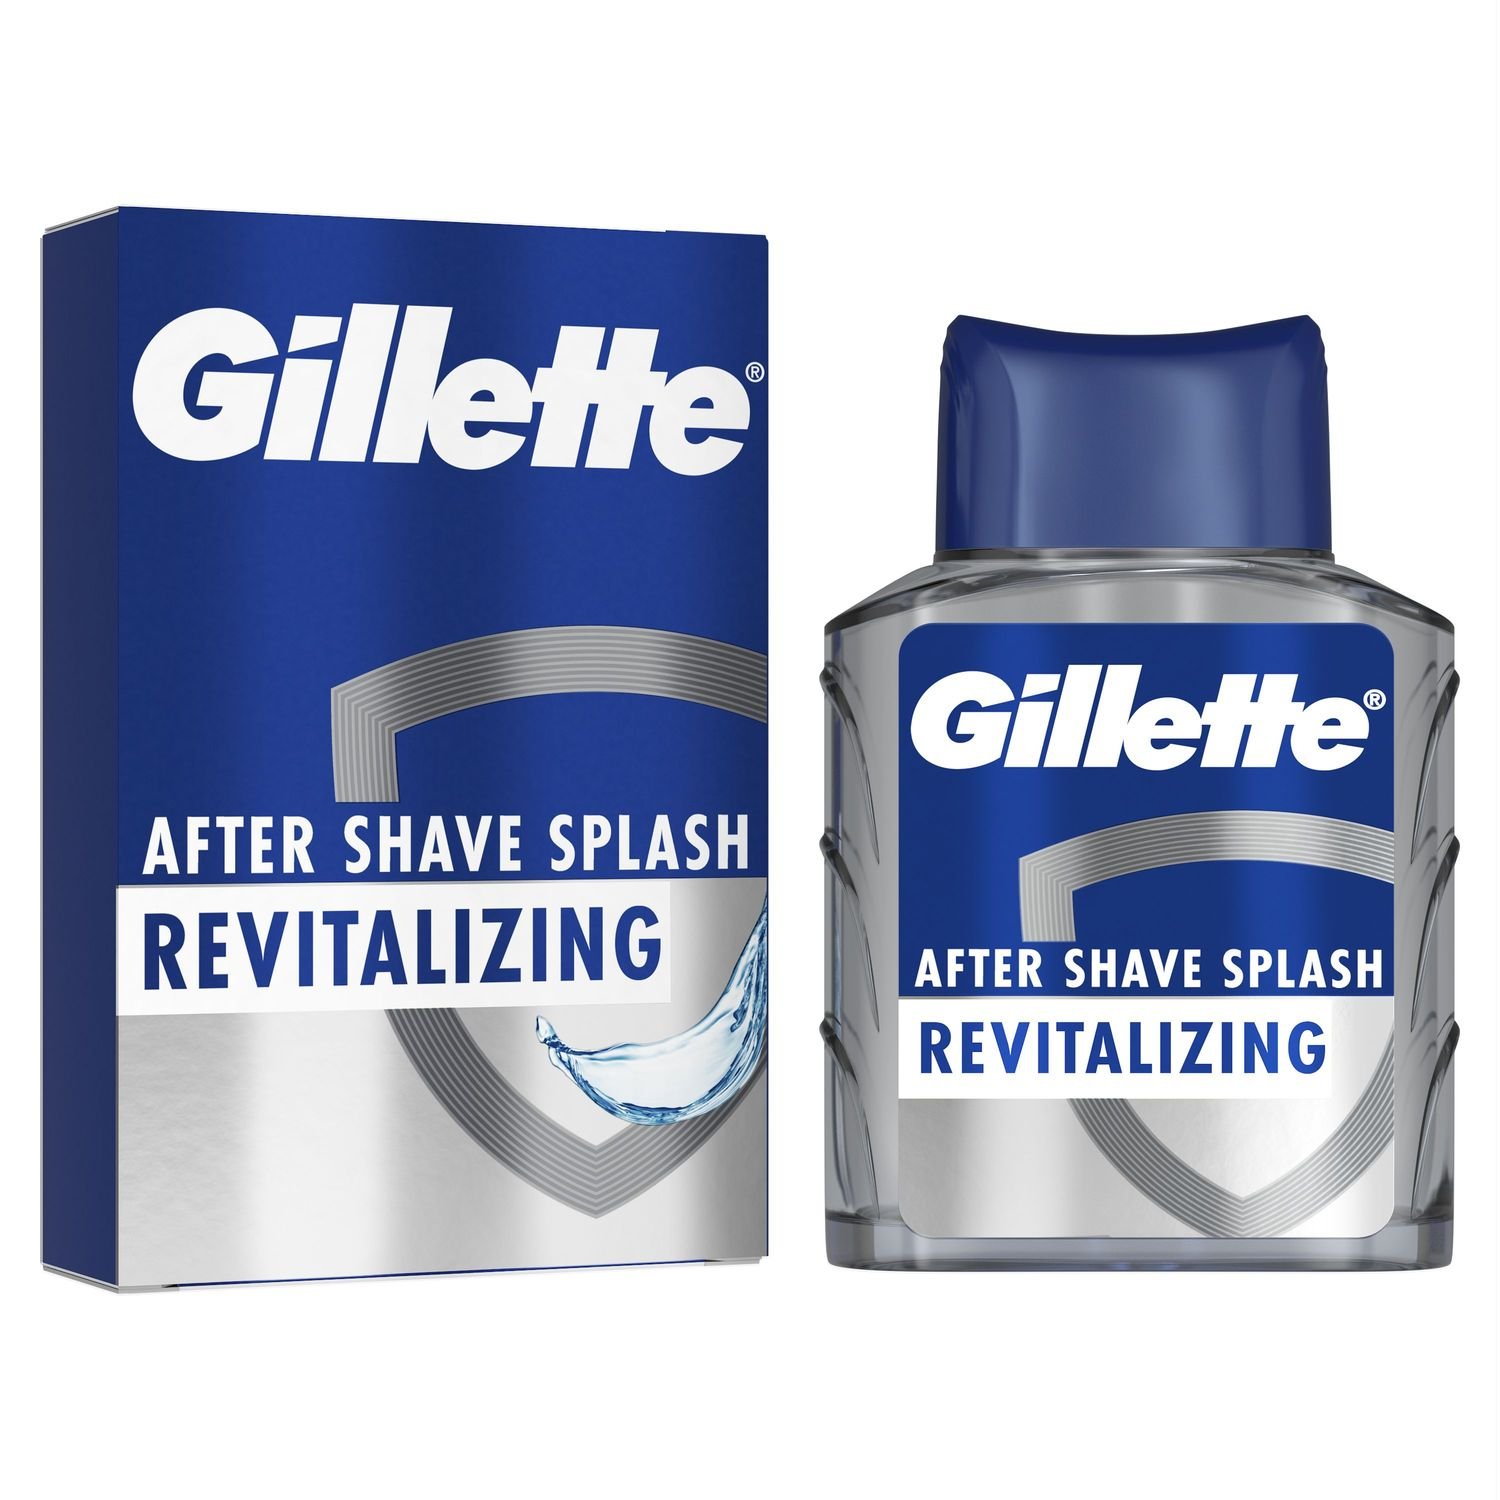 Лосьон после бритья Gillette Series Sea Mist, восстанавливающий, 100 мл - фото 3